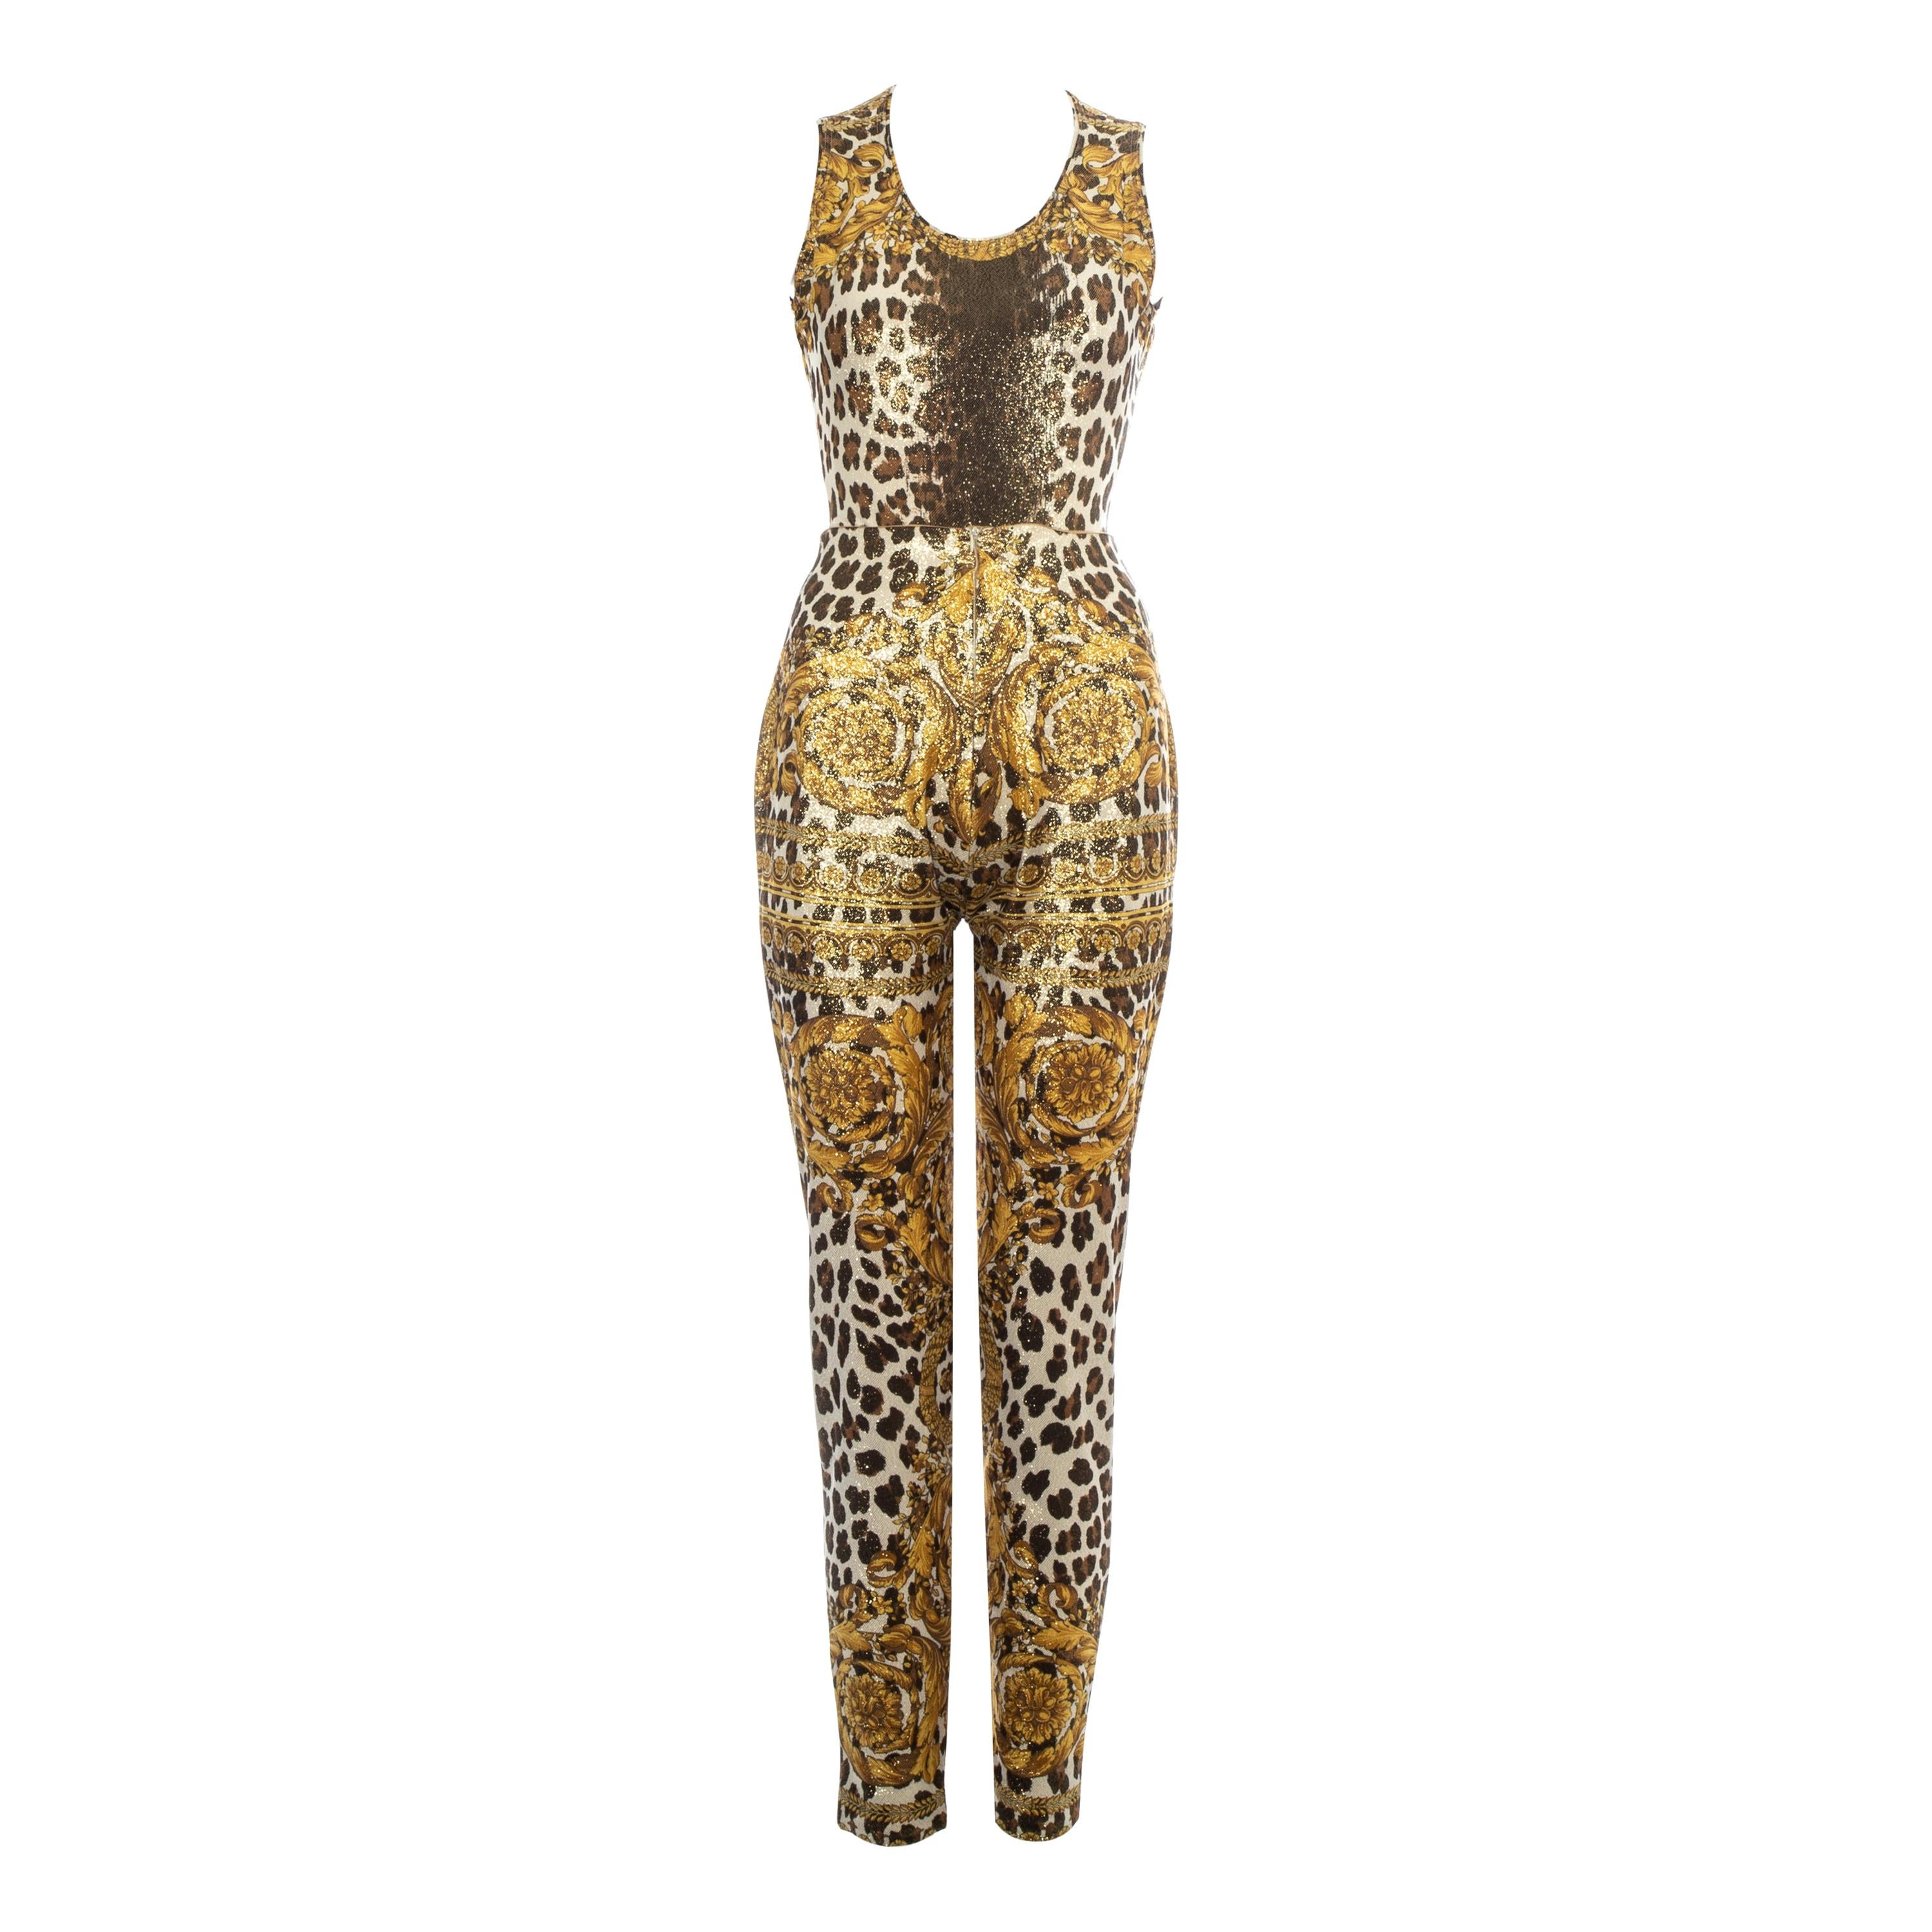 Body et pantalon à imprimé léopard doré Gianni Versace, P/E 1992